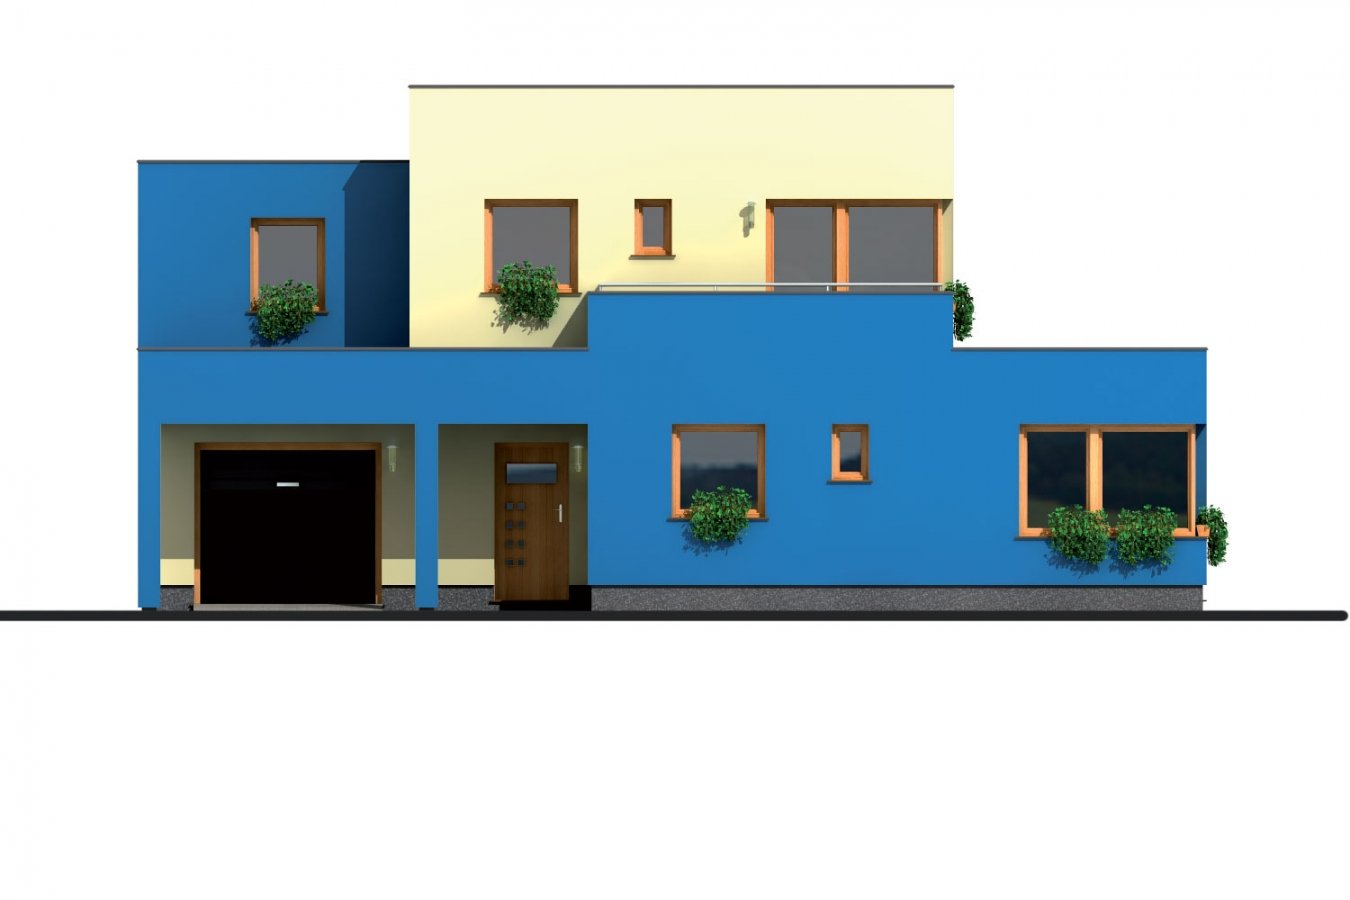 Zrkadlový pohľad 1. - Projekt moderního rodinného domu s plochou střechou, pokojem v přízemí a garáží.